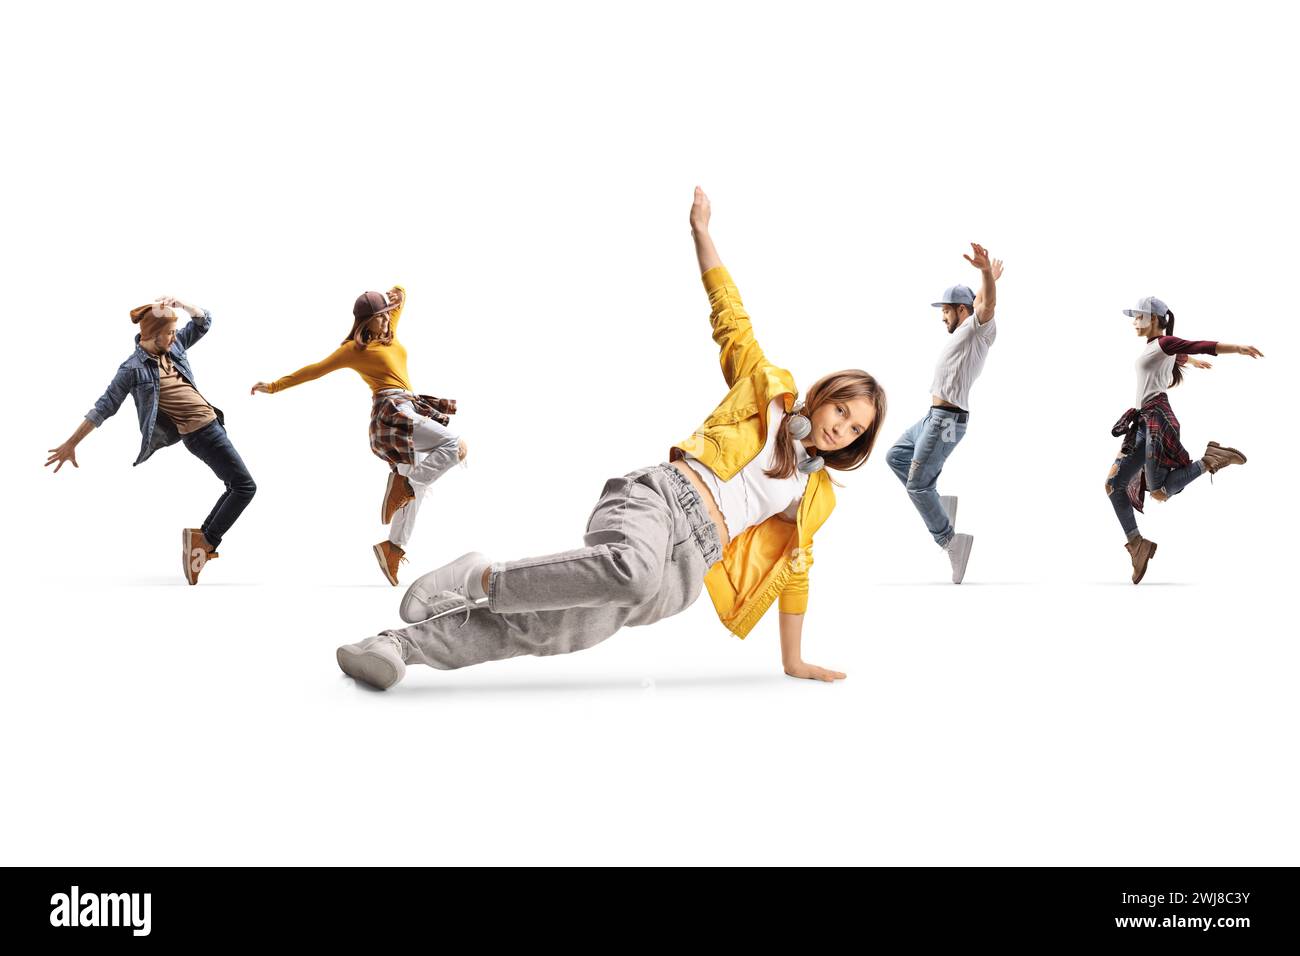 Groupe de personnes dansant et une jeune femme dans une pose de danse sur le sol isolé sur fond blanc Banque D'Images